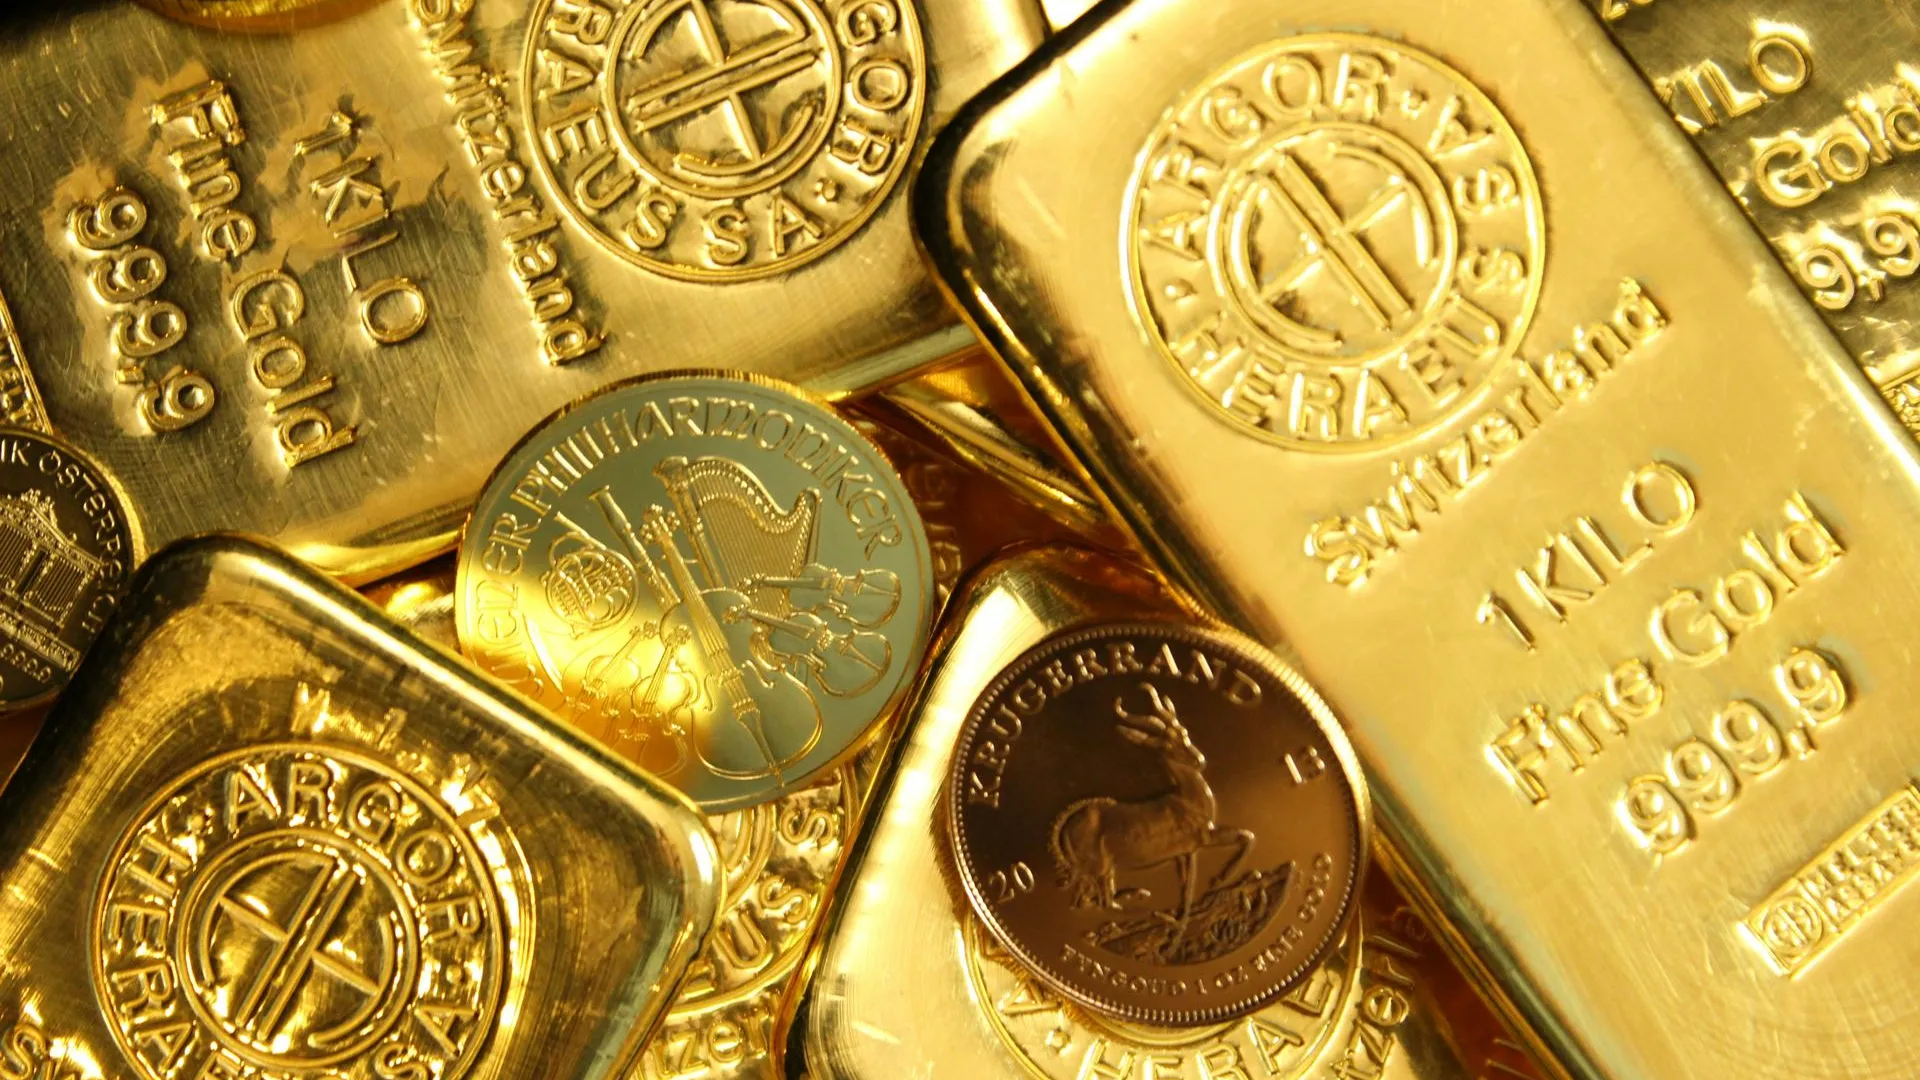 Эксперт Рокотянская спрогнозировала дальнейший рост цен золота из-за геополитики